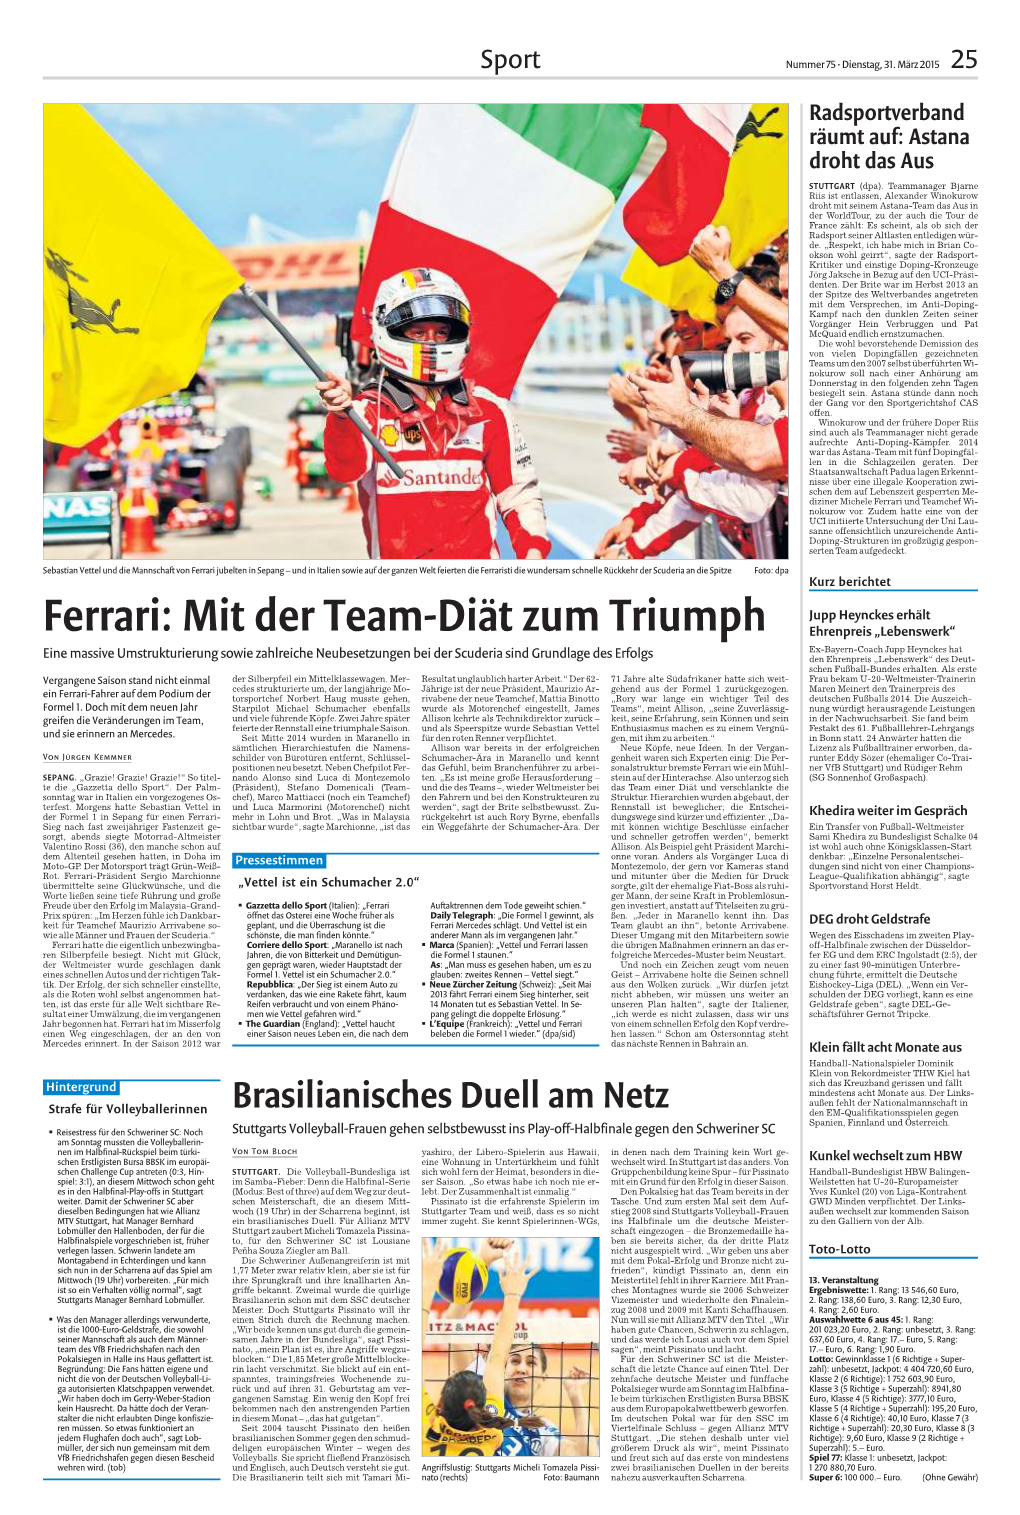 Ferrari: Mit Der Team-Diät Zum Triumph